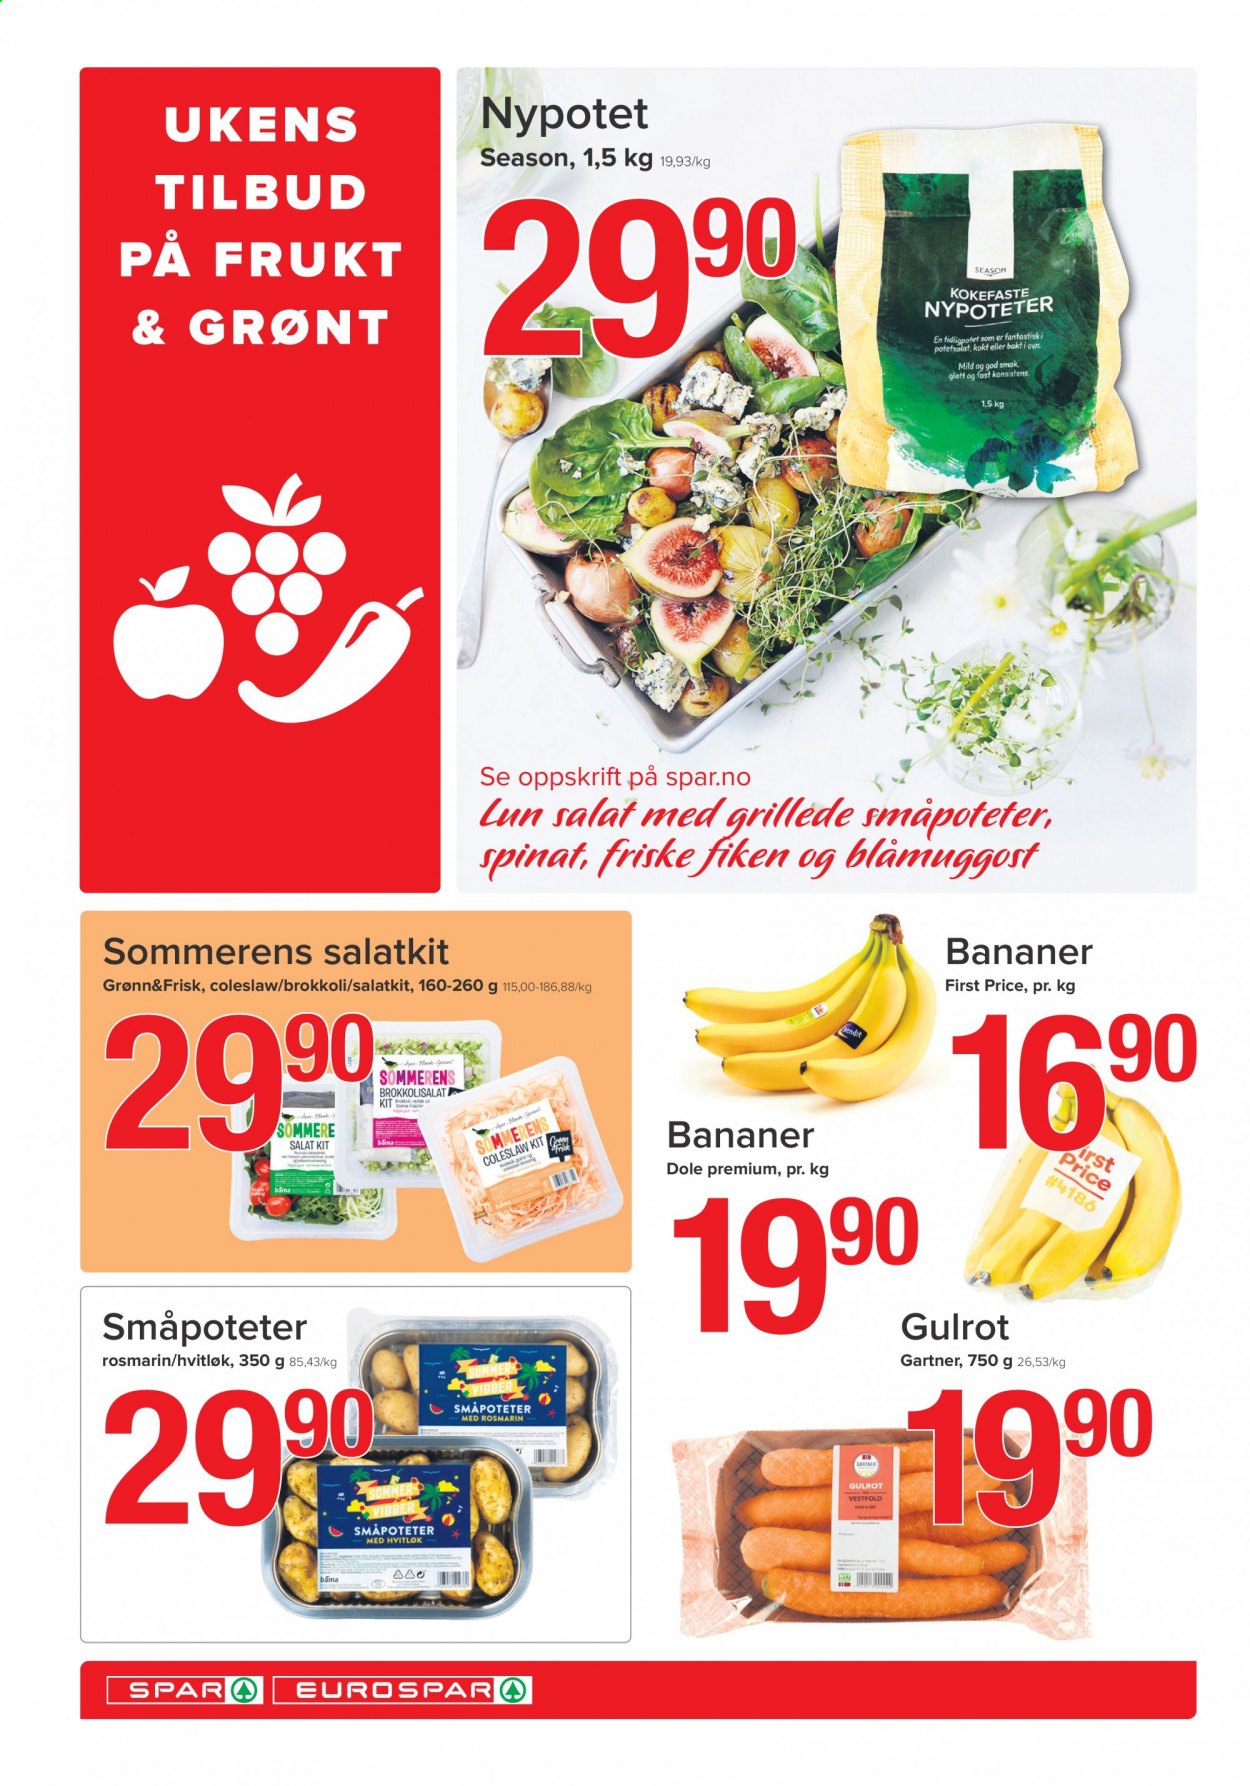 thumbnail - Kundeavis SPAR - 18.5.2021 - 23.5.2021 - Produkter fra tilbudsaviser - bananer, gulrot, salat, coleslaw, potetsalat, blåmuggost. Side 4.